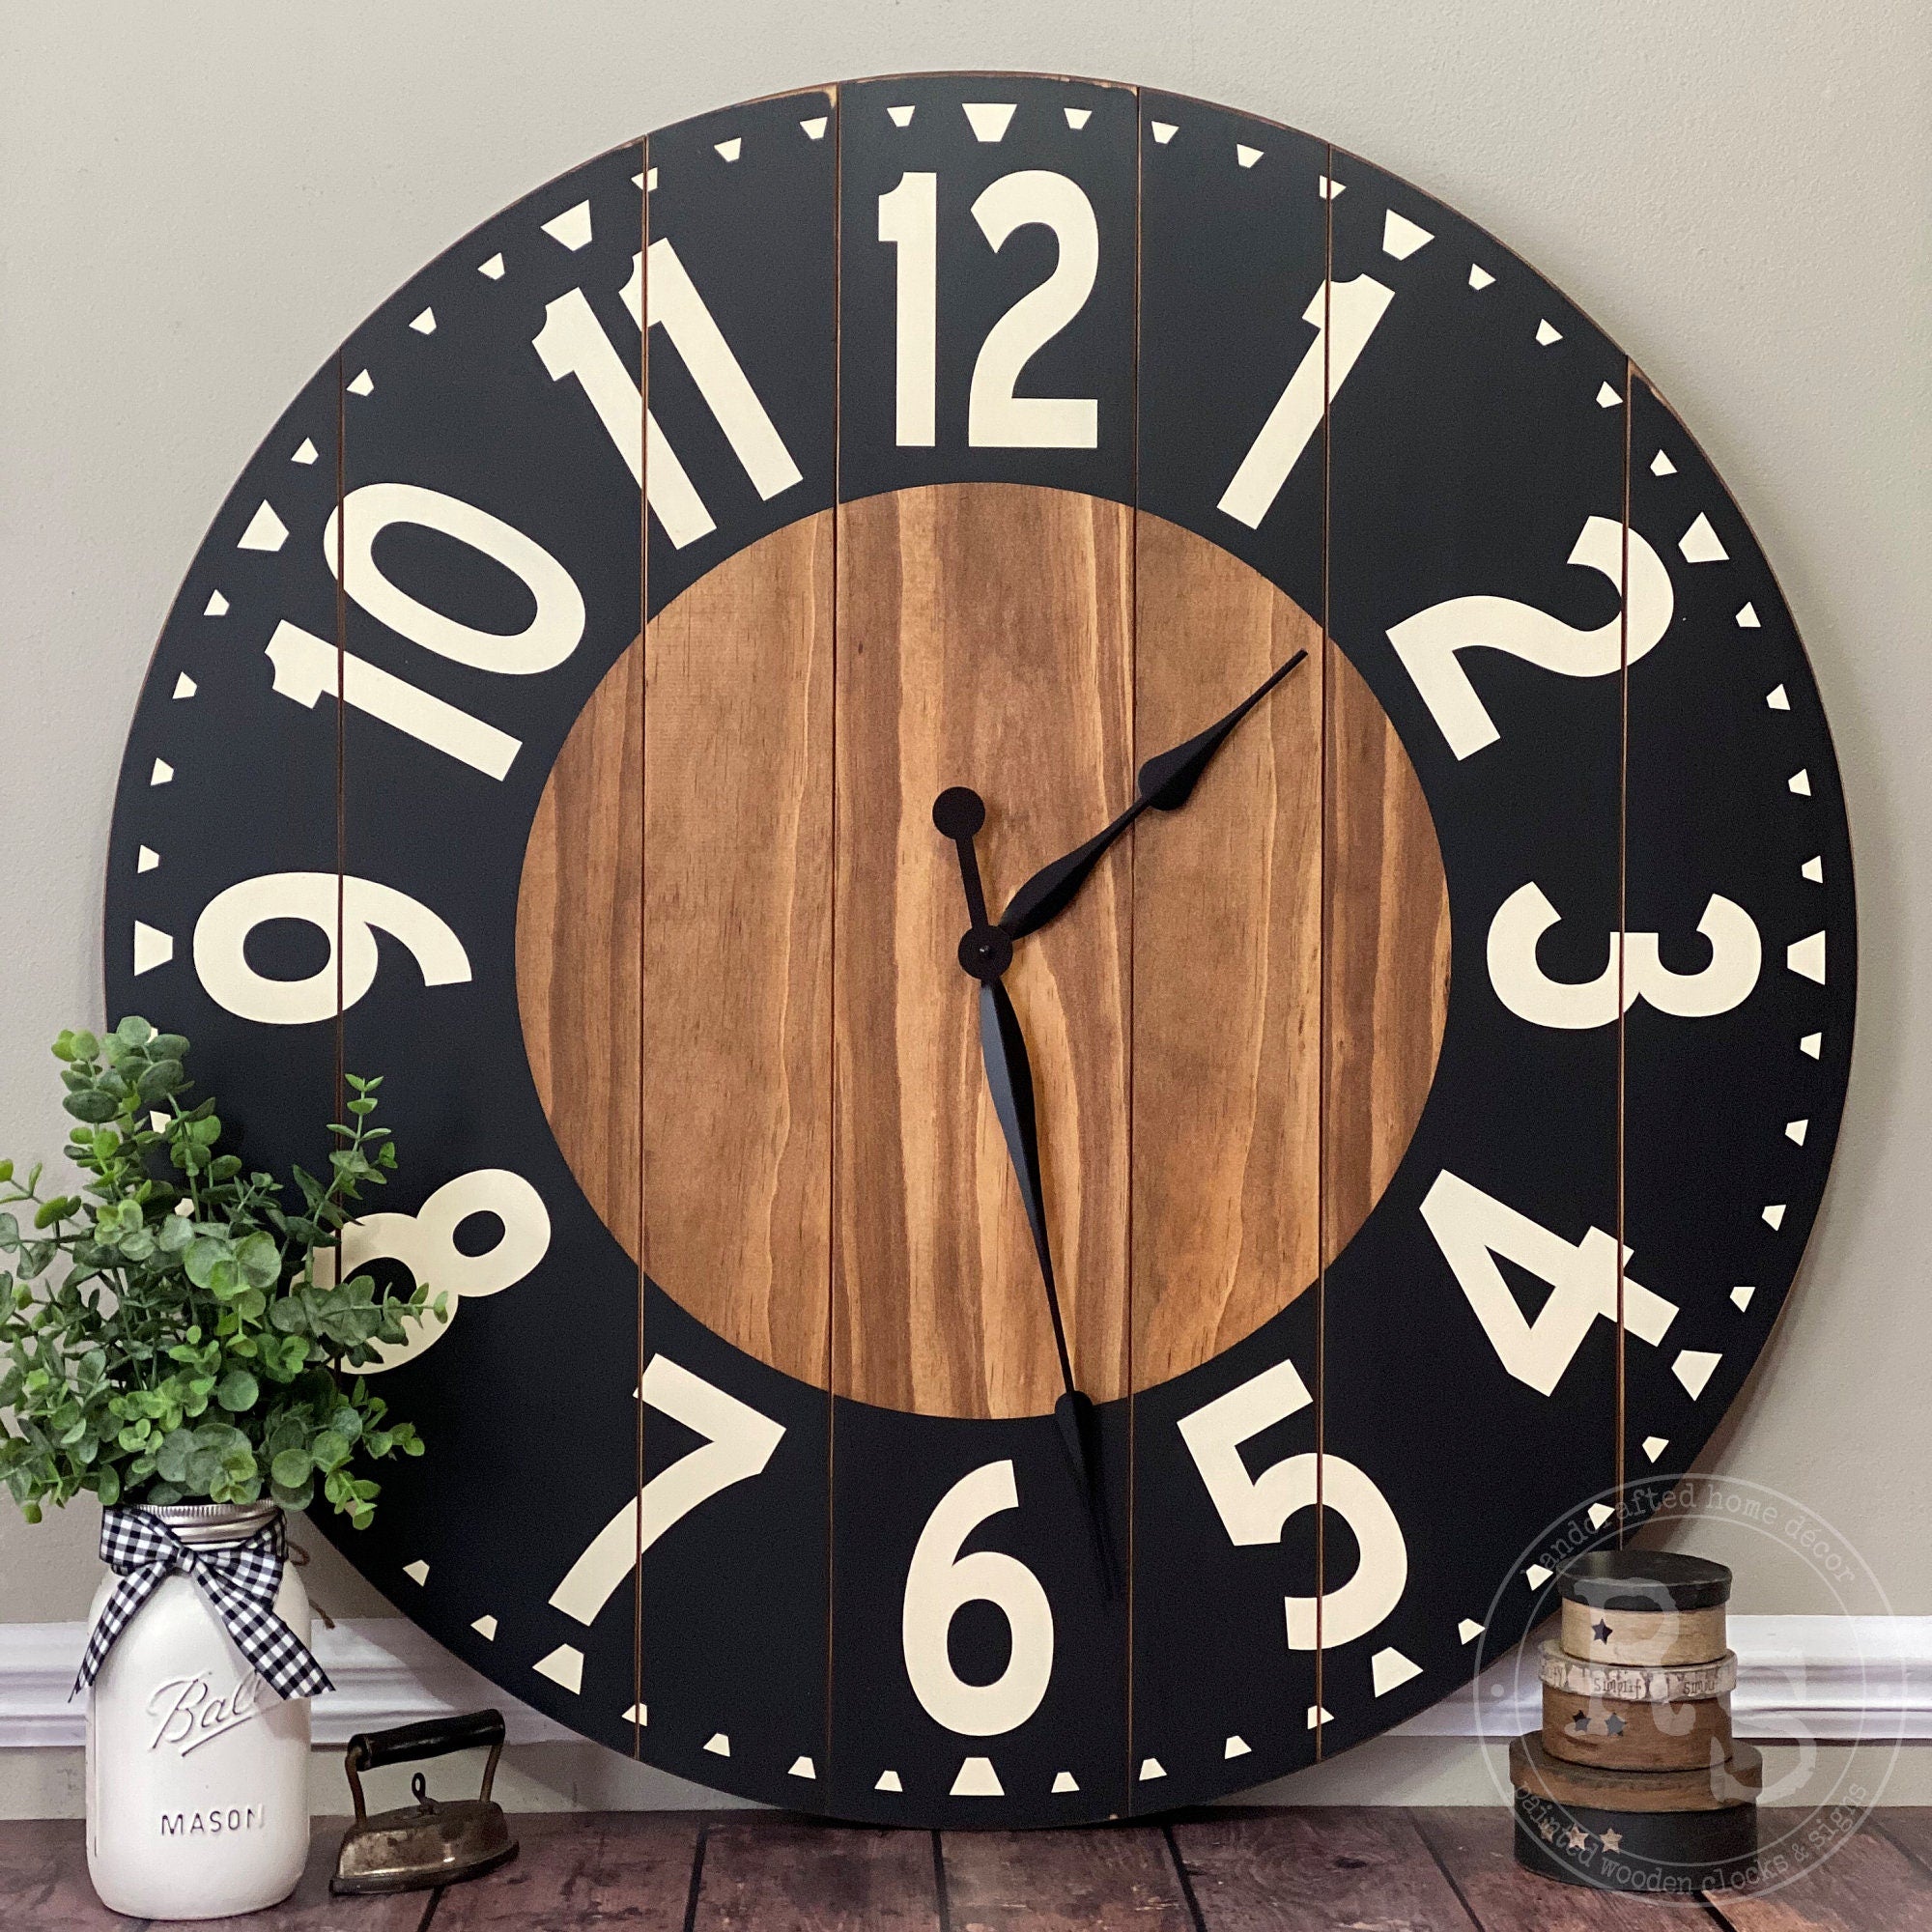 The Rielyn Farmhouse Clock